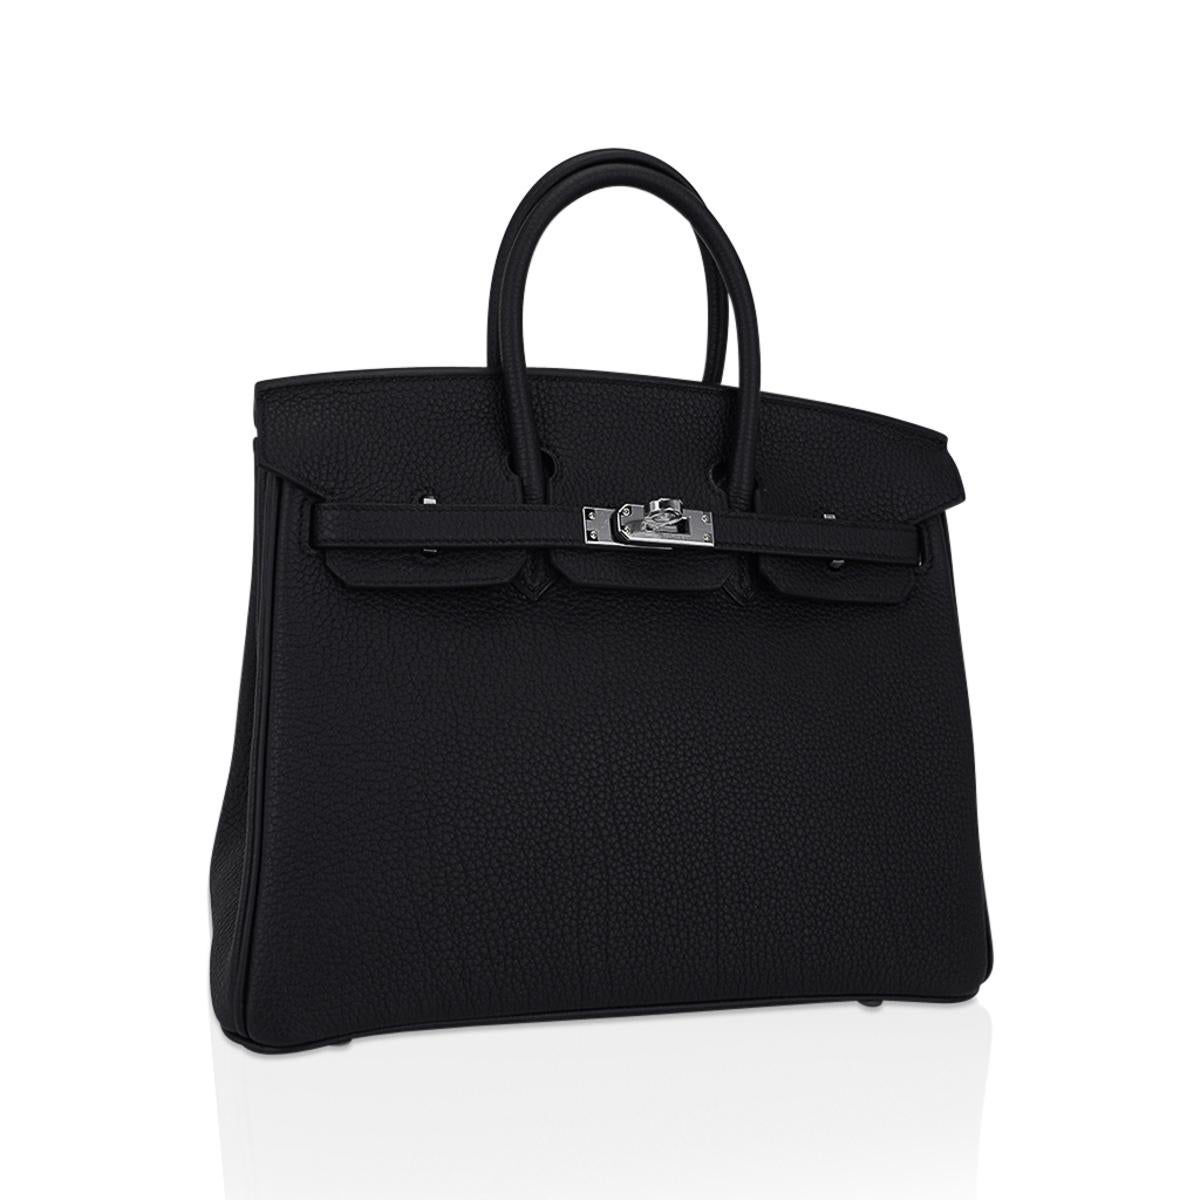 Mightychic propose un sac Hermes Birkin 25 de couleur noire.
Ce magnifique sac Birkin est frais et net, avec des ferrures en Palladium.
Le cuir Togo luxueux est souple et résistant aux rayures.
Livré avec la serrure, les clés, la clochette, les